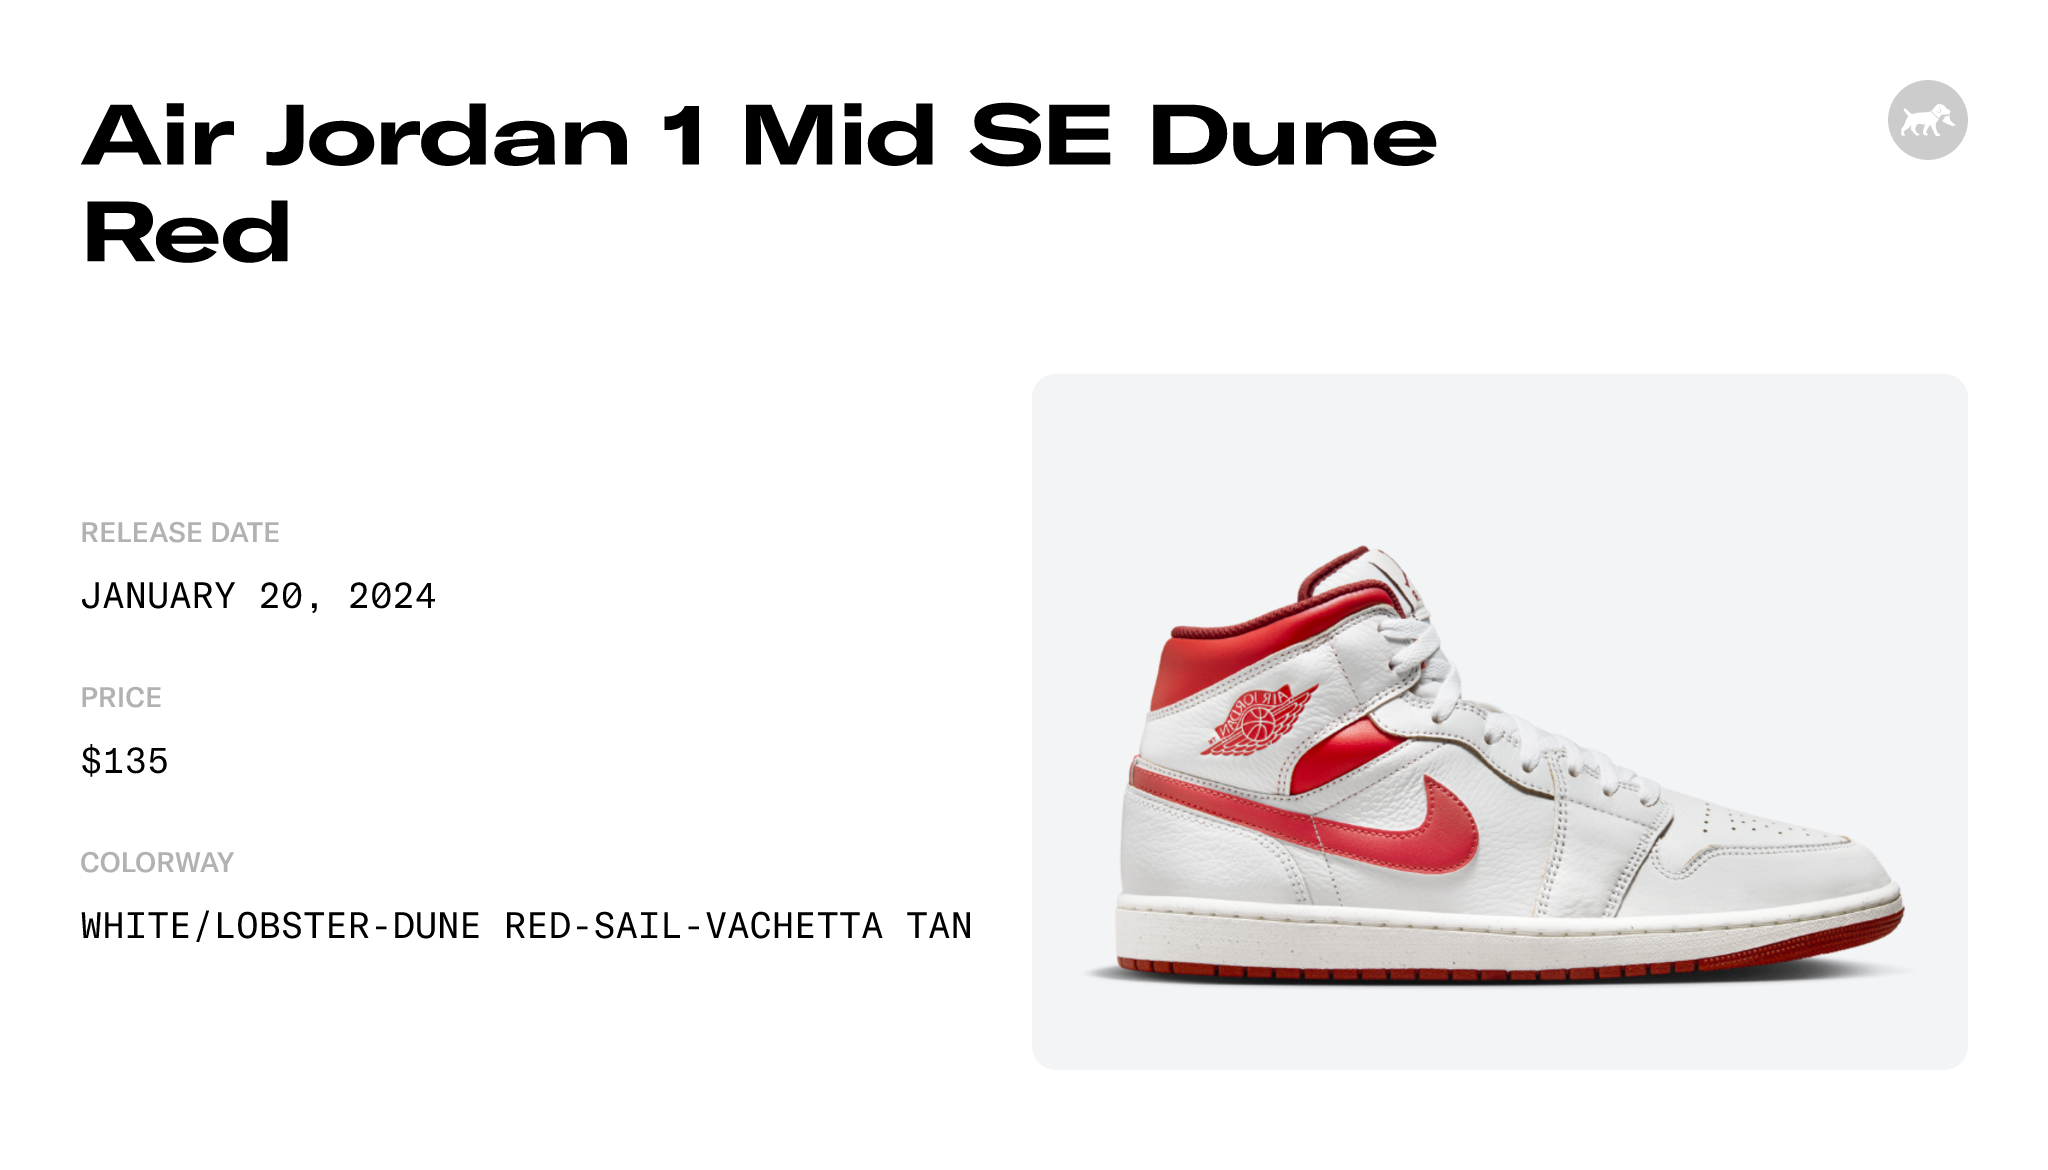 Air Jordan 1 Mid SE Dune Red - FJ3458-160 Raffles and Release Date